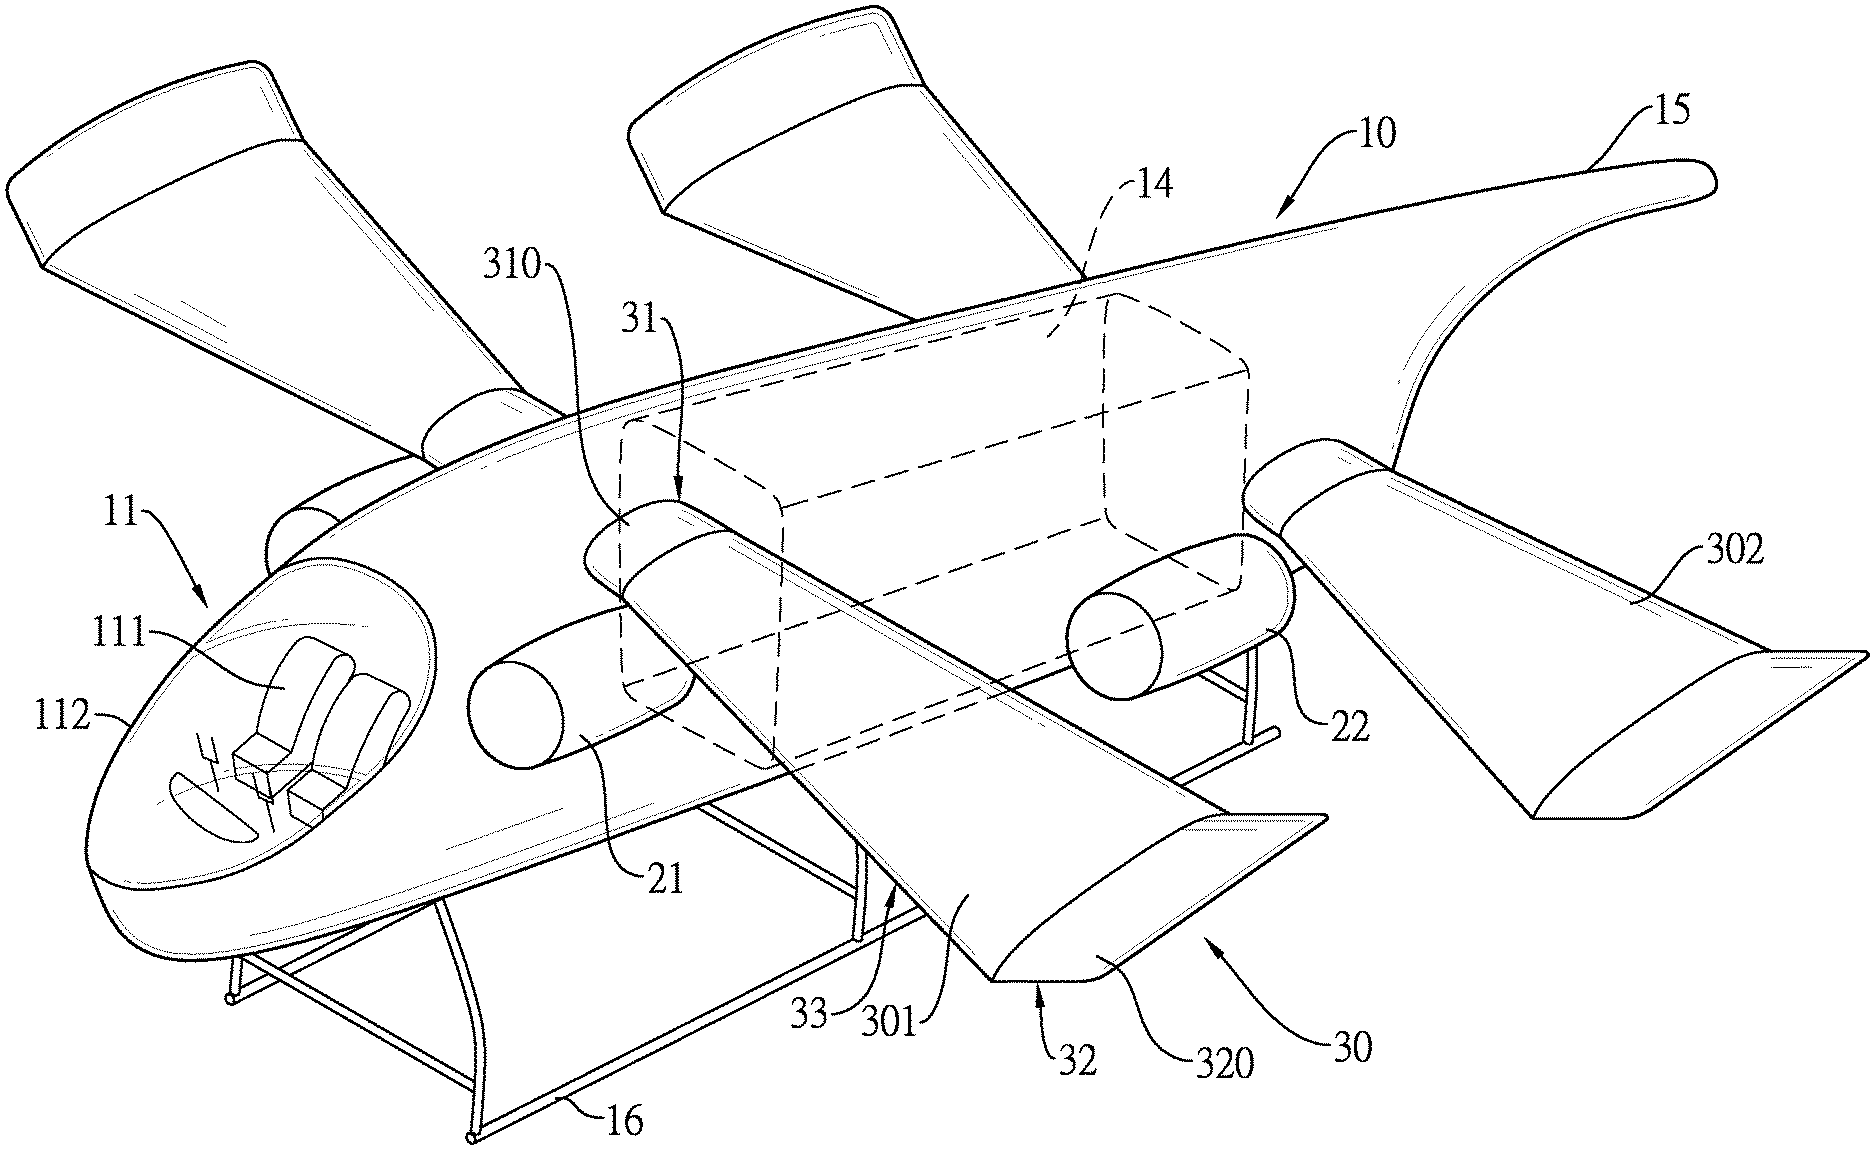 VTOL aircraft with wings Patent Grant Chang [Chang; Jiann-Chung]